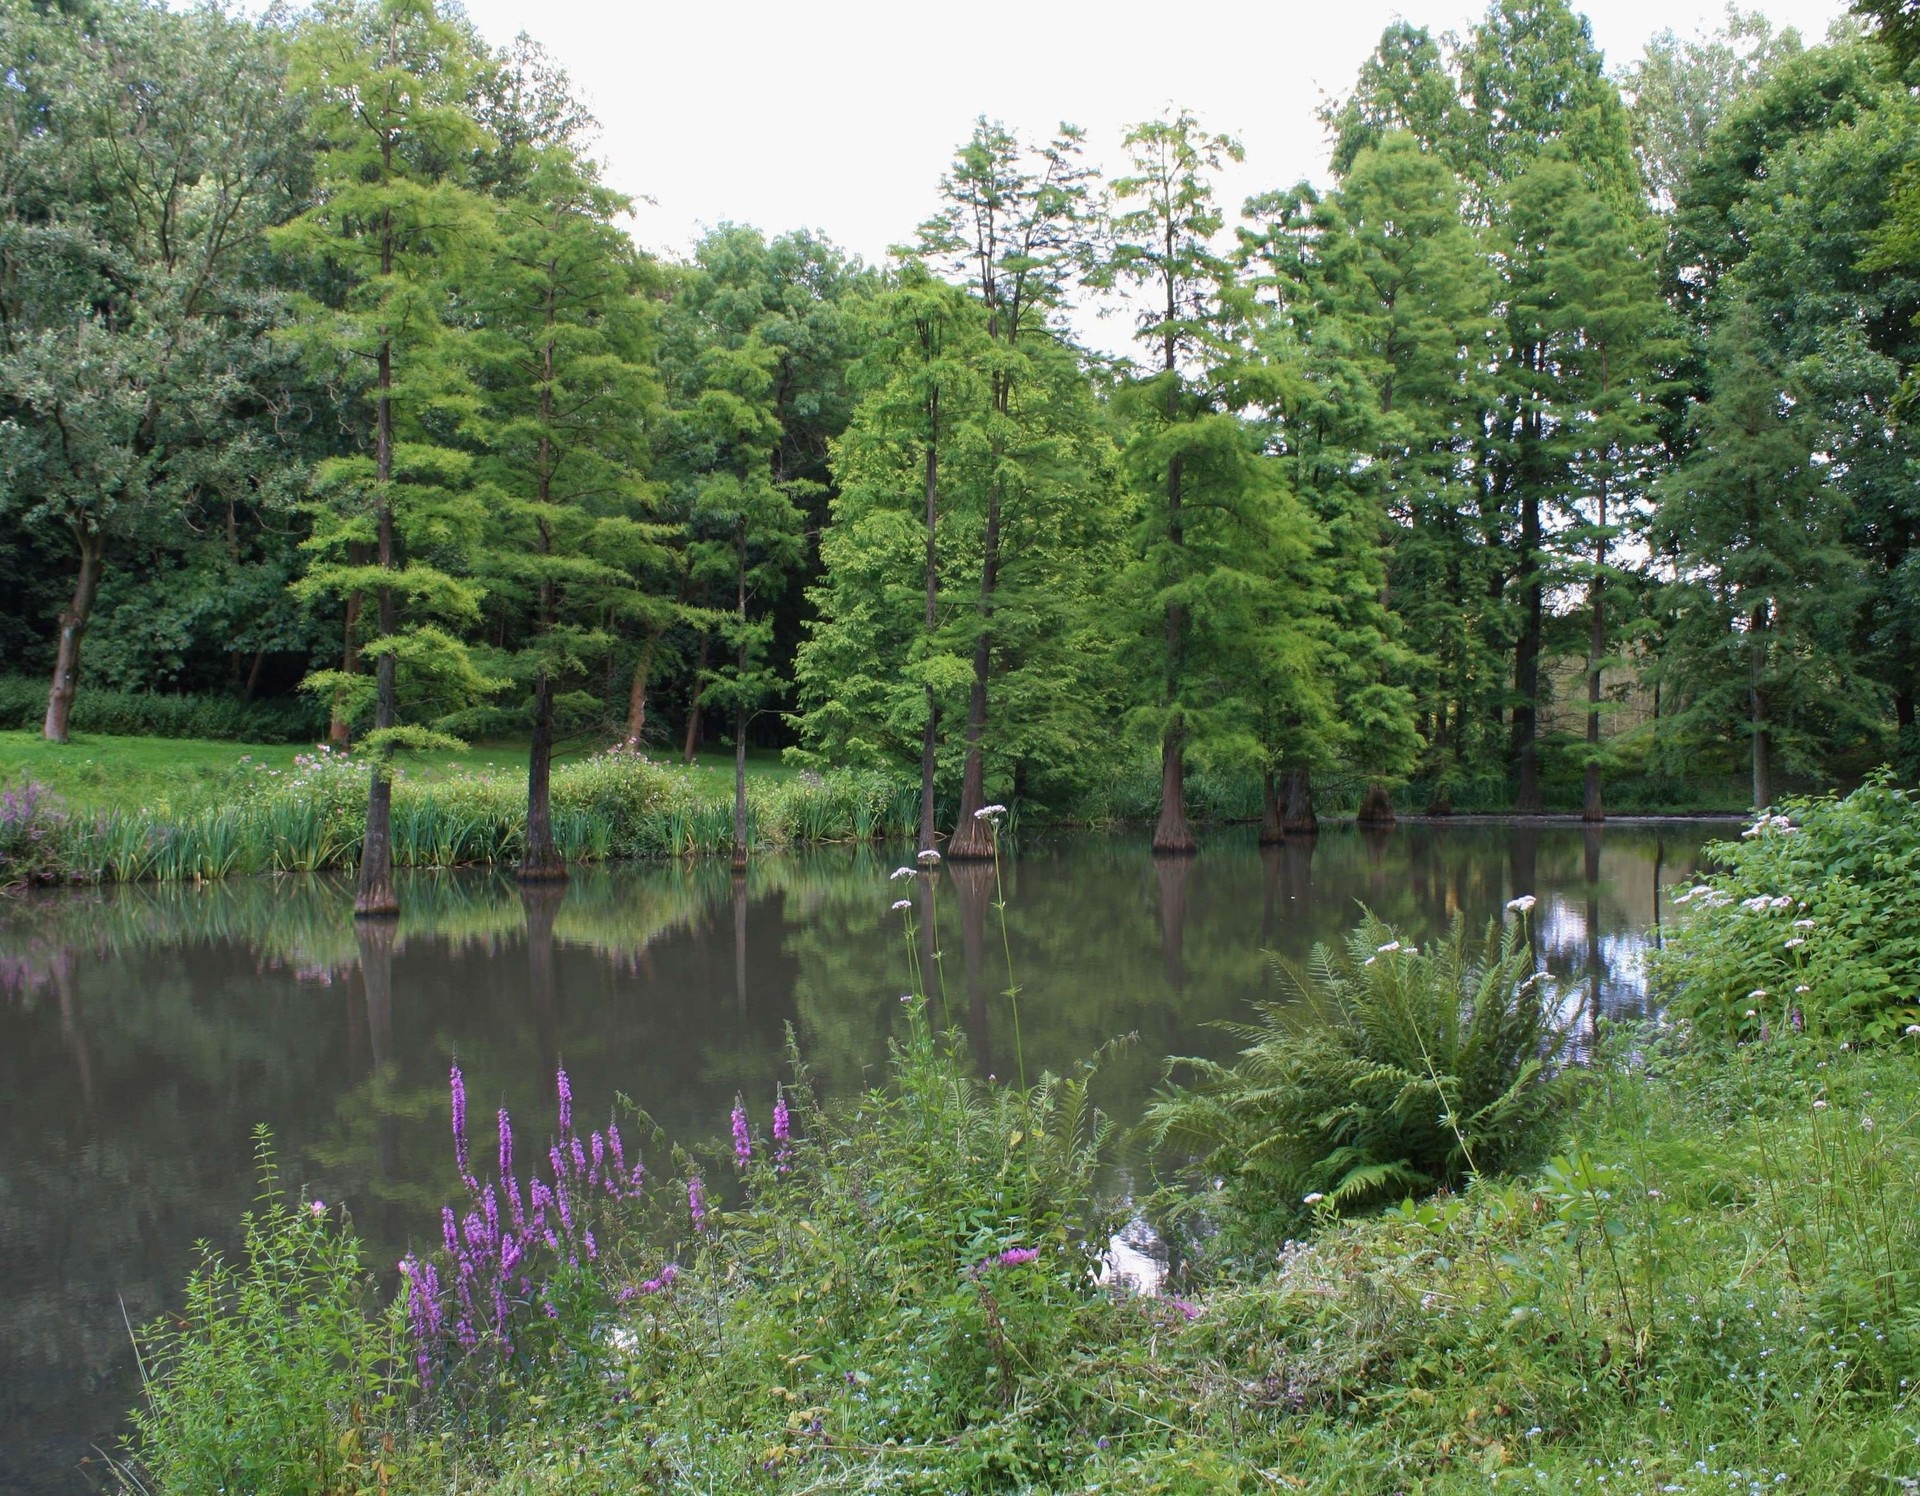 Sumpfzypressenteich, Botanischer Garten Rombergpark in Dortmund